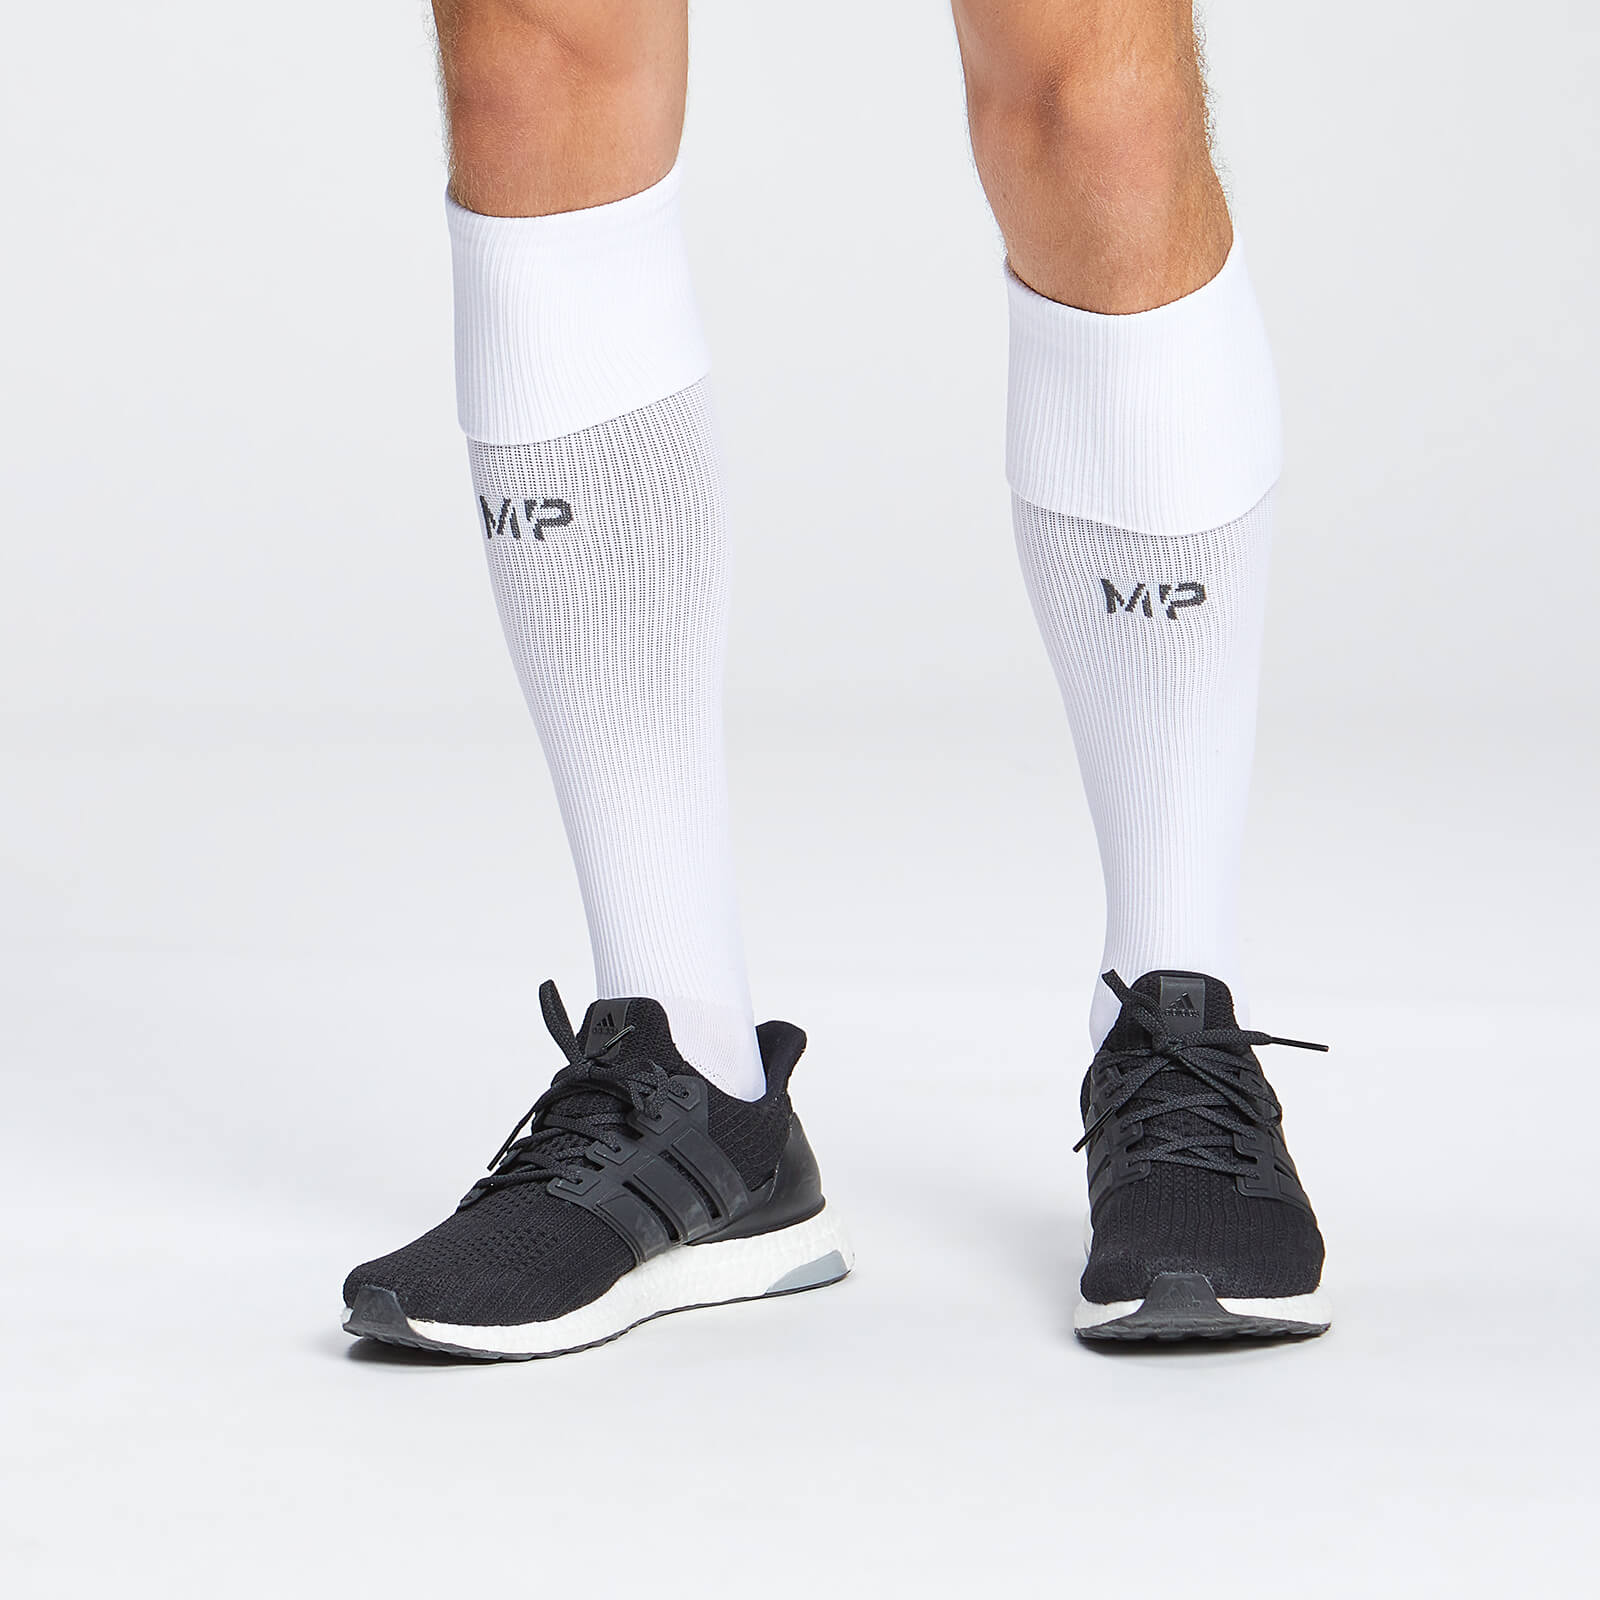 MP футболни чорапи  по цялата дължина - бели - UK 3-6